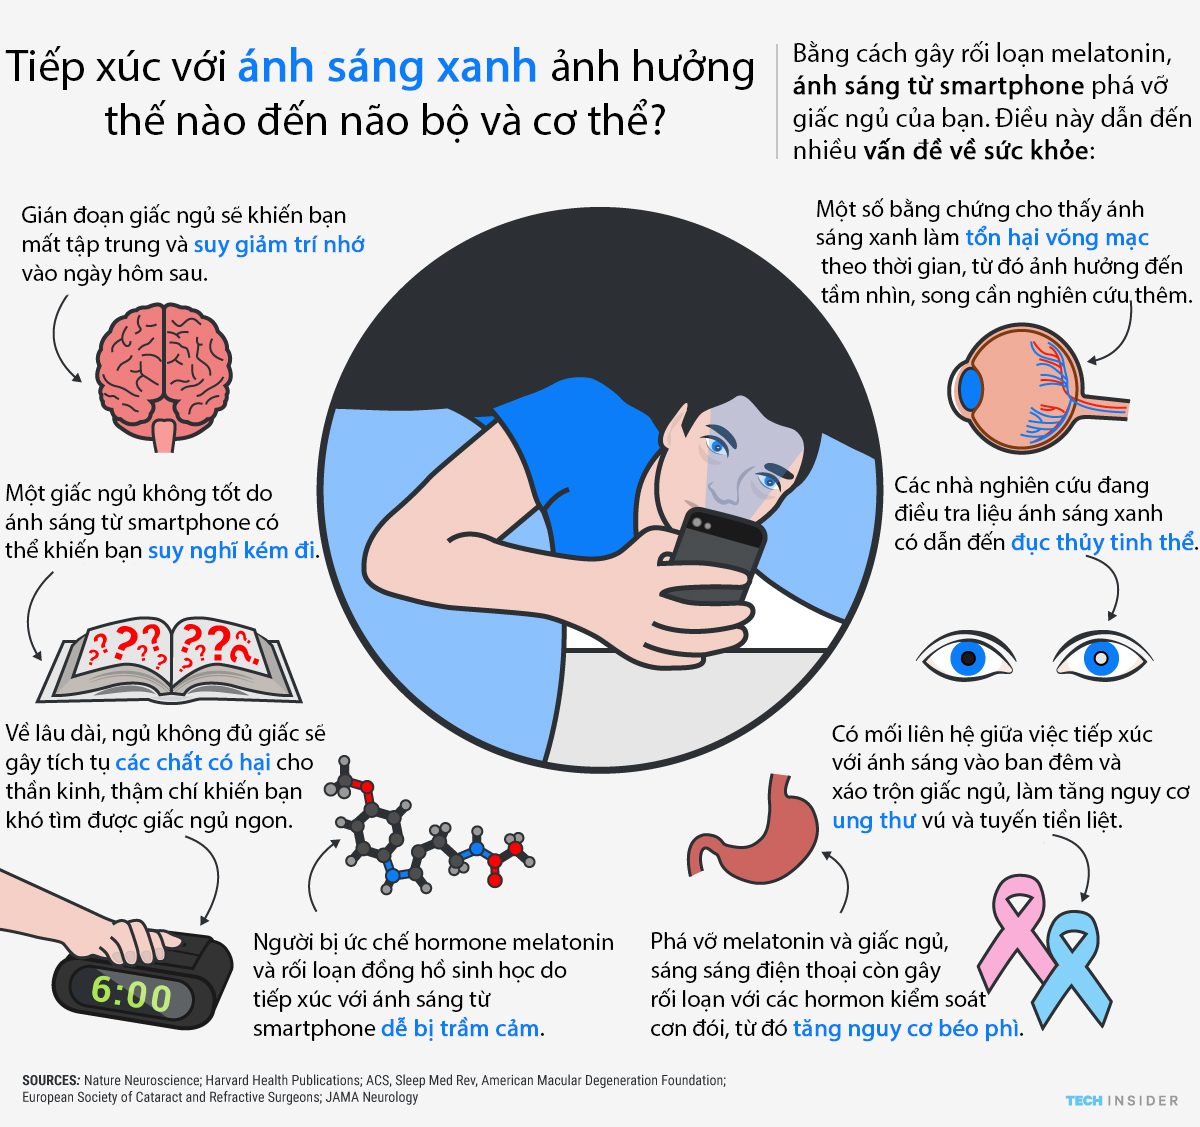 Lý do dùng điện thoại trước khi ngủ gây hại sức khỏe